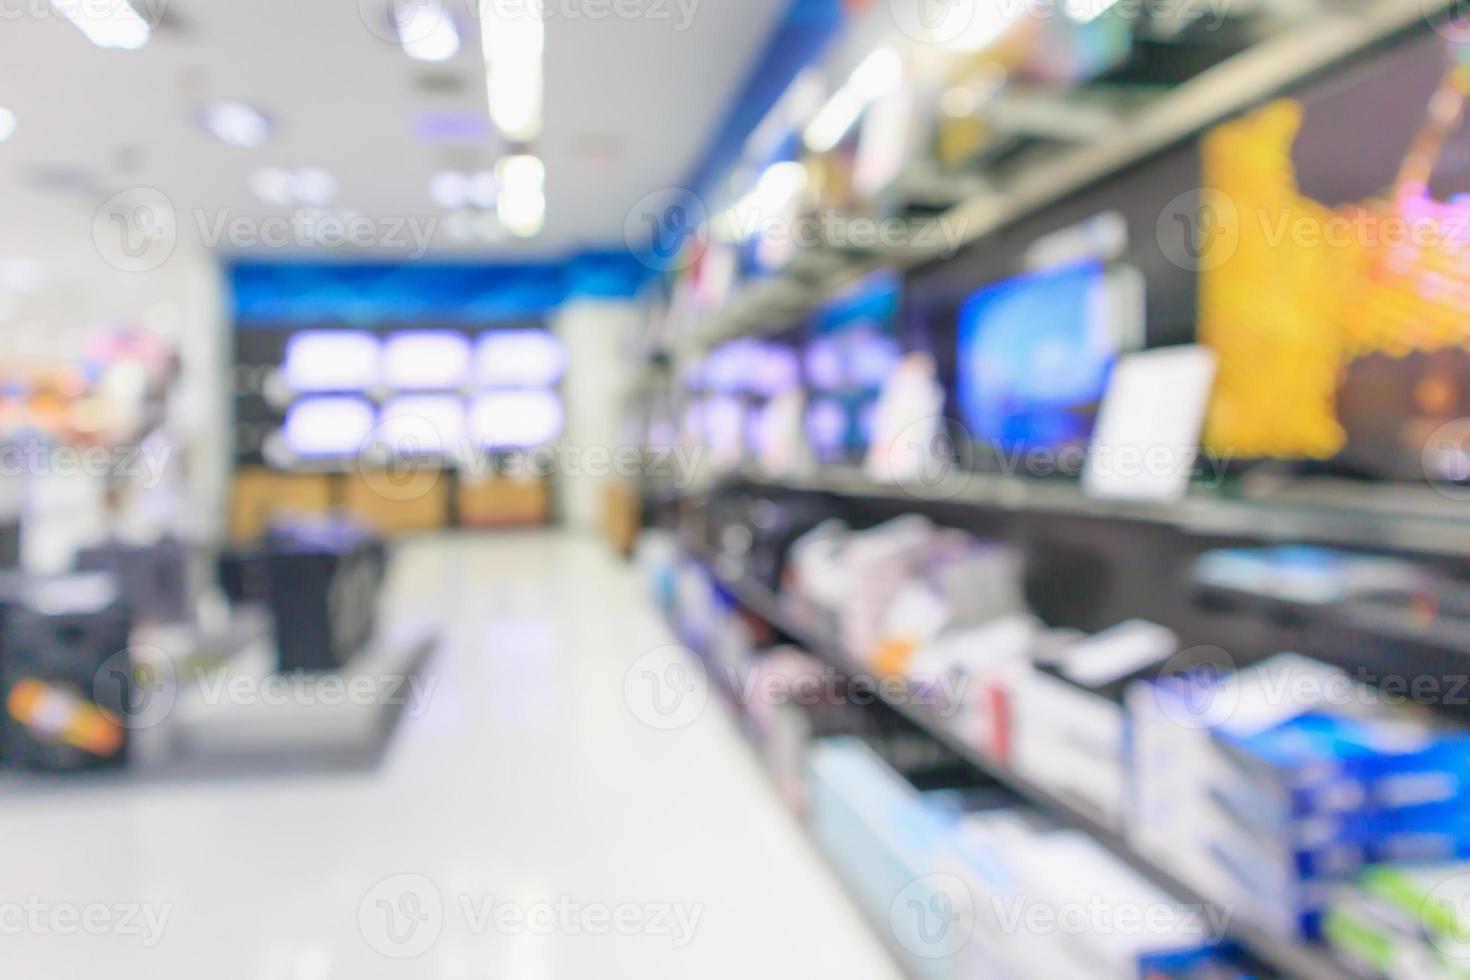 Los grandes almacenes electrónicos muestran televisión y electrodomésticos con fondo borroso de luz bokeh foto